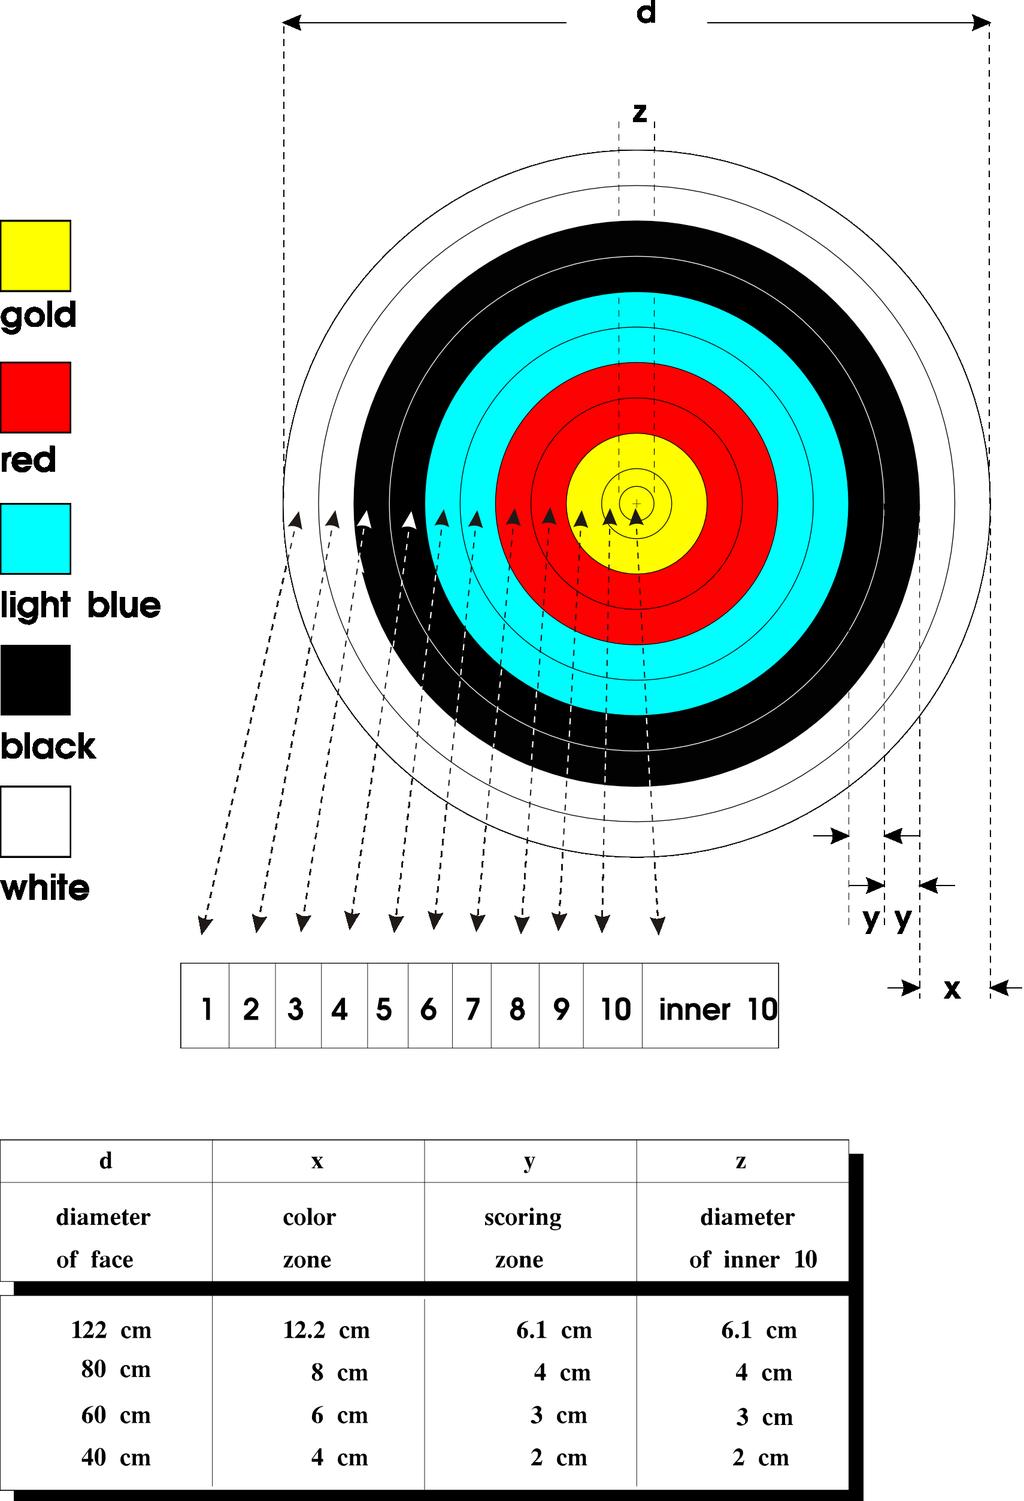 Image 5: -0 Scoring Zones Target Face 7.2.2.4.